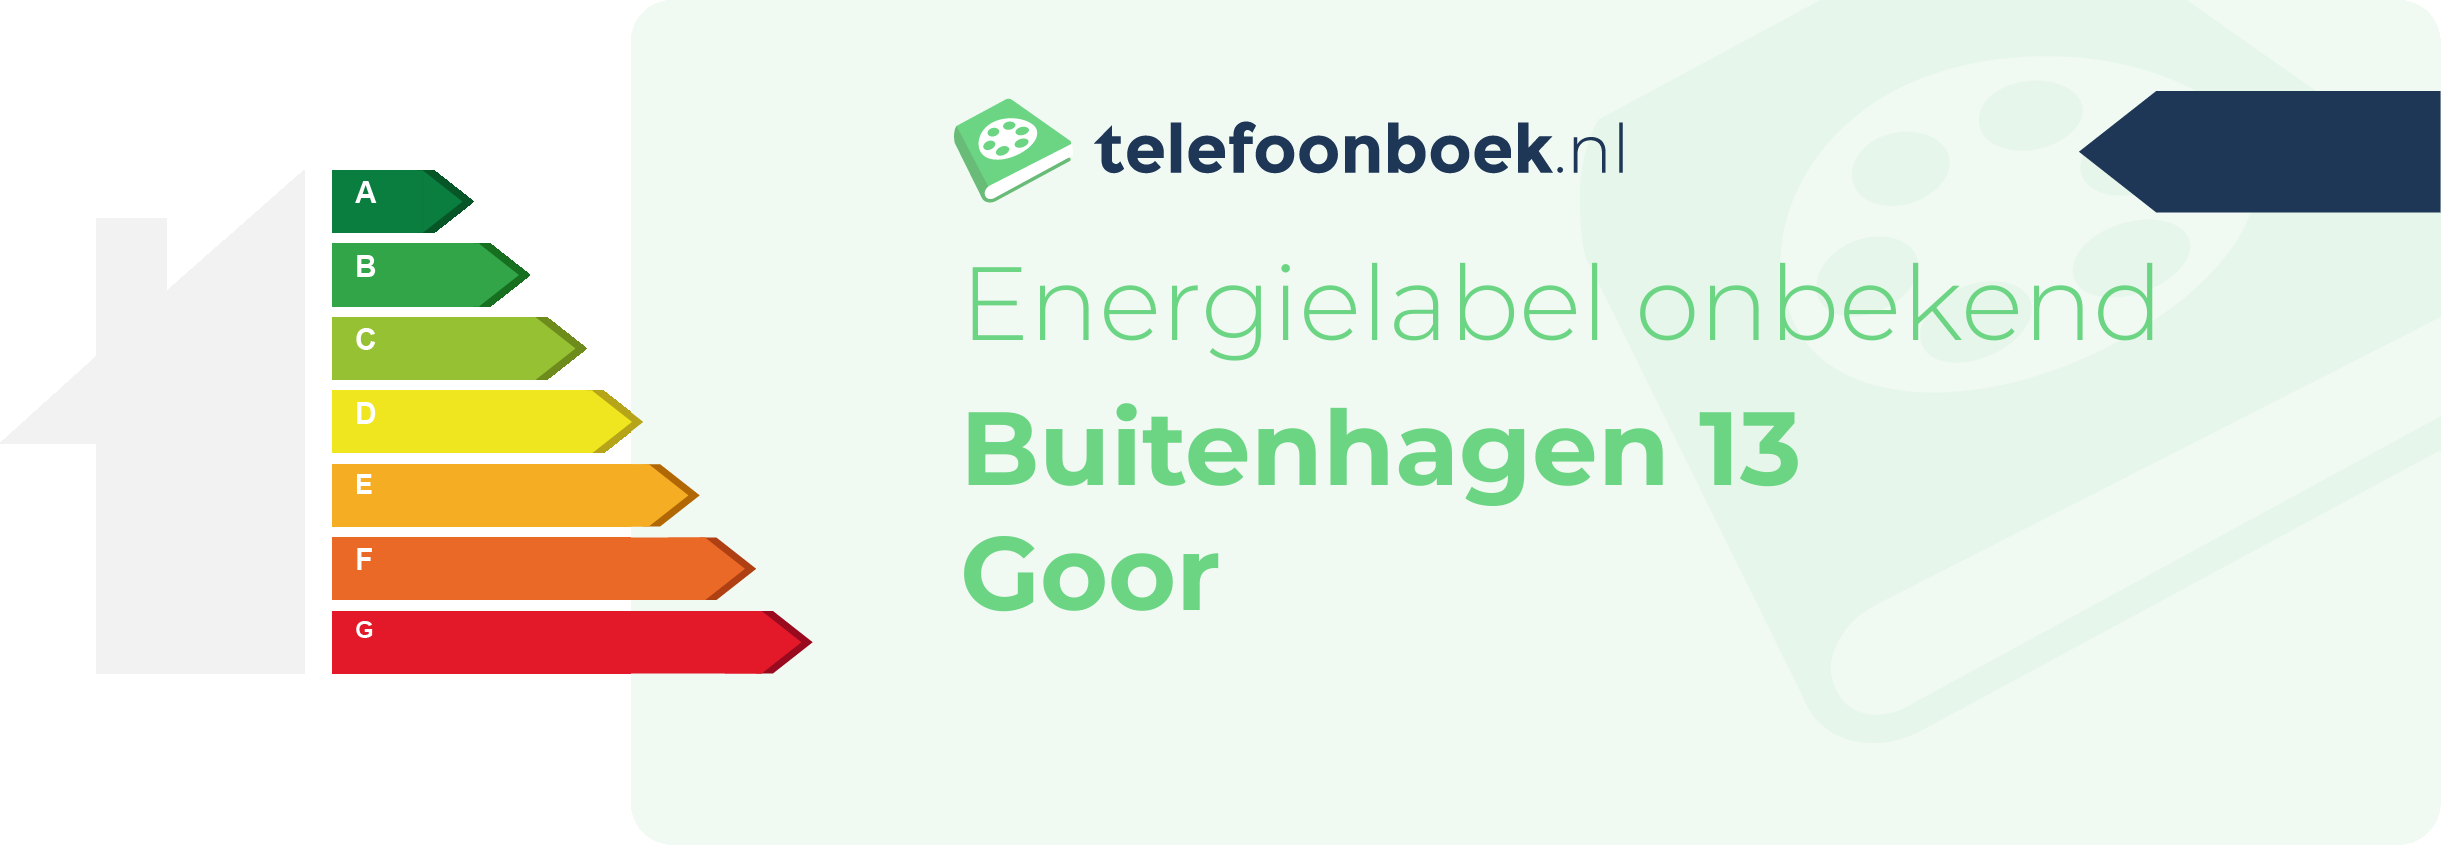 Energielabel Buitenhagen 13 Goor